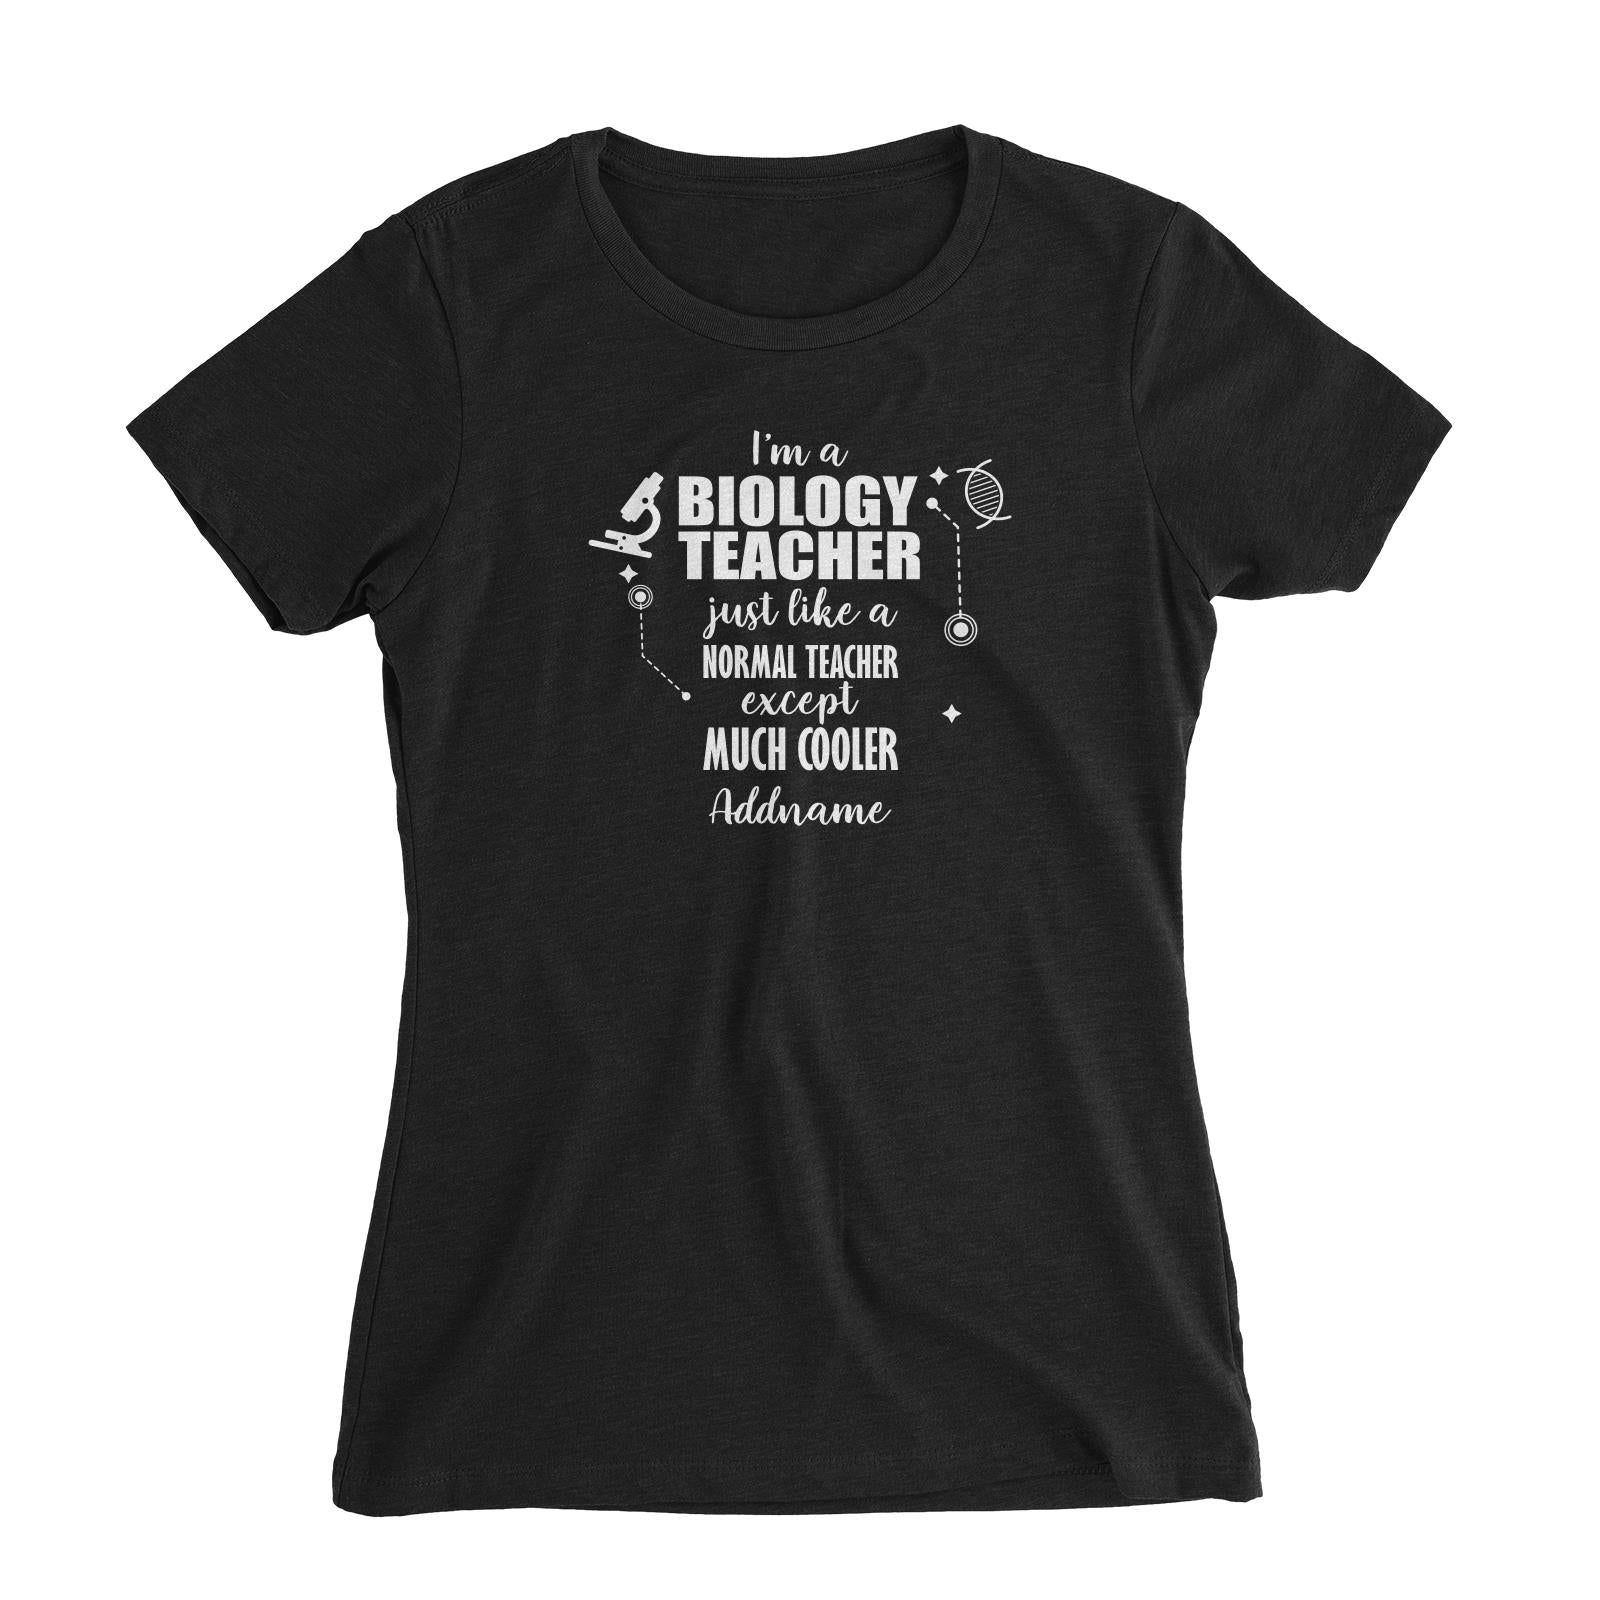 Subject Teachers 2 I'm A Biology Teacher Addname Women's Slim Fit T-Shirt